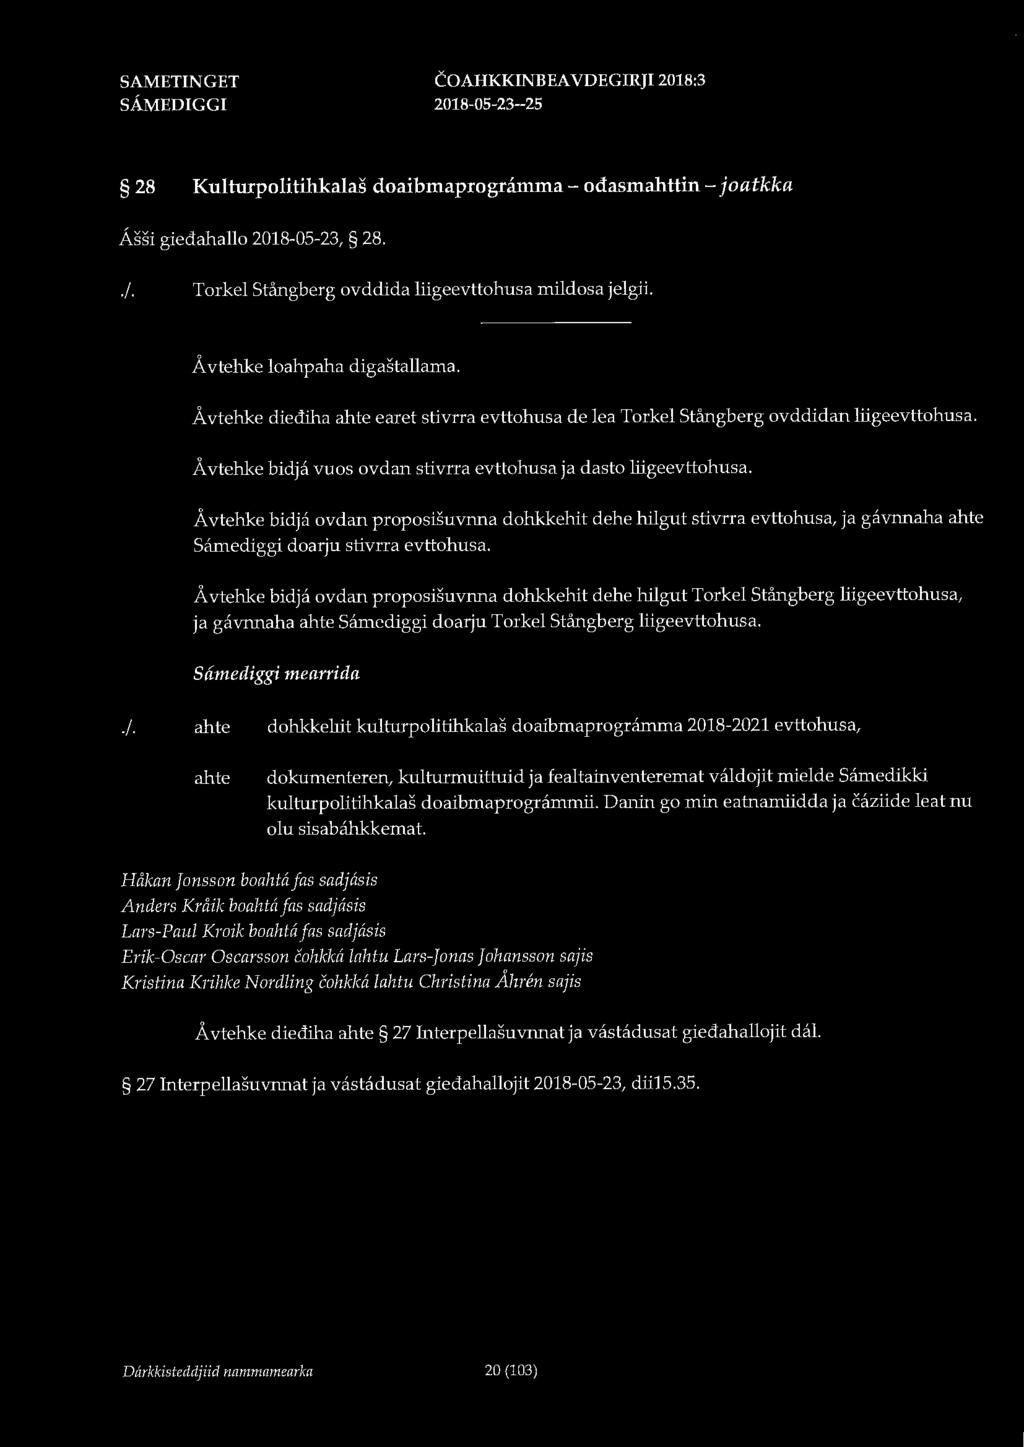 COAHKKINBEA VDEGIRJI 2018:3 28 Kulturpolitihkalas doaibmaprogramma - odasmahttin - joatkka Assi giedahallo 2018-05-23, 28../. Torkel Stångberg ovddida liigeevttohusa mildosa jelgii.